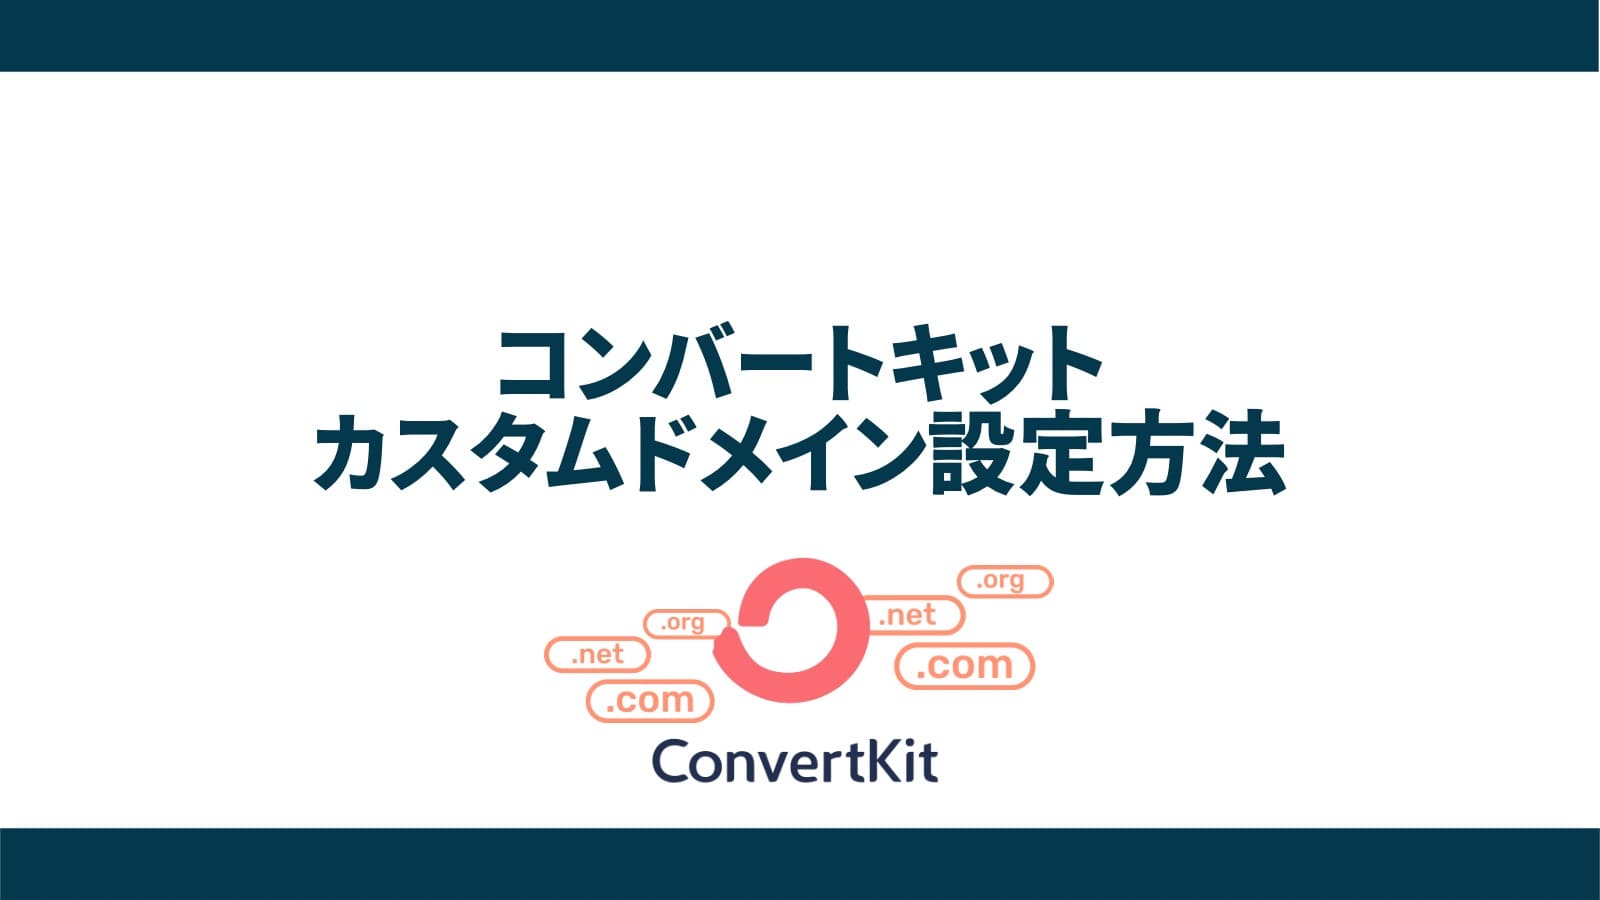 【手順解説】ConvertKit(コンバートキット)でカスタムドメインを設定する方法